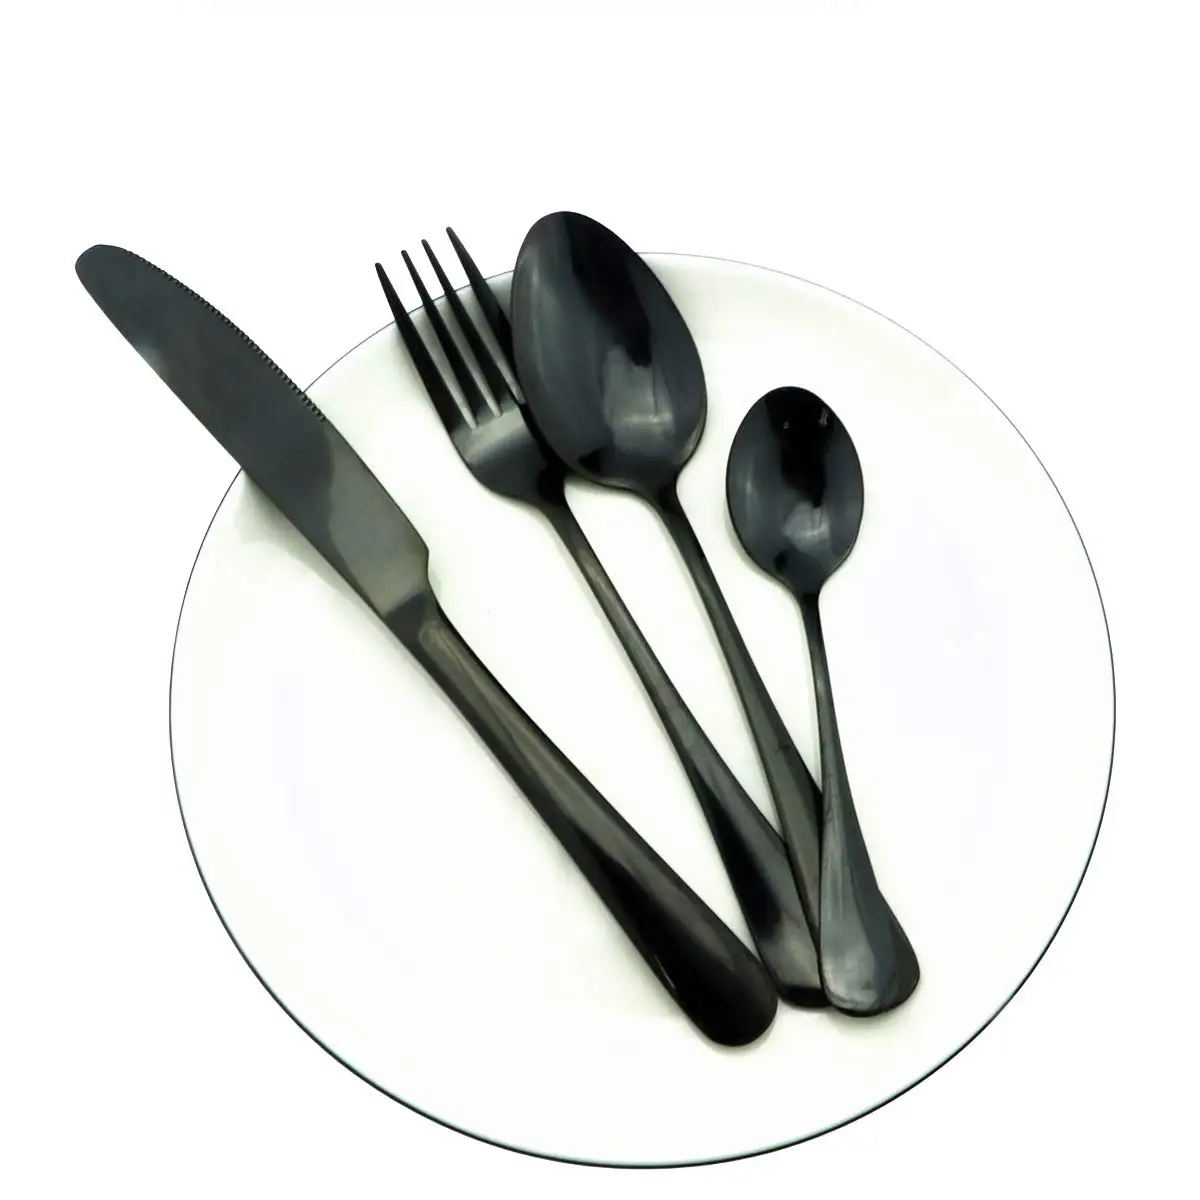 Высококачественный набор столовых приборов из нержавеющей стали 18/8, черный набор посуды, черная посуда, нож, вилка, чайная ложка, палочки для еды, соломинка, мешочек, набор